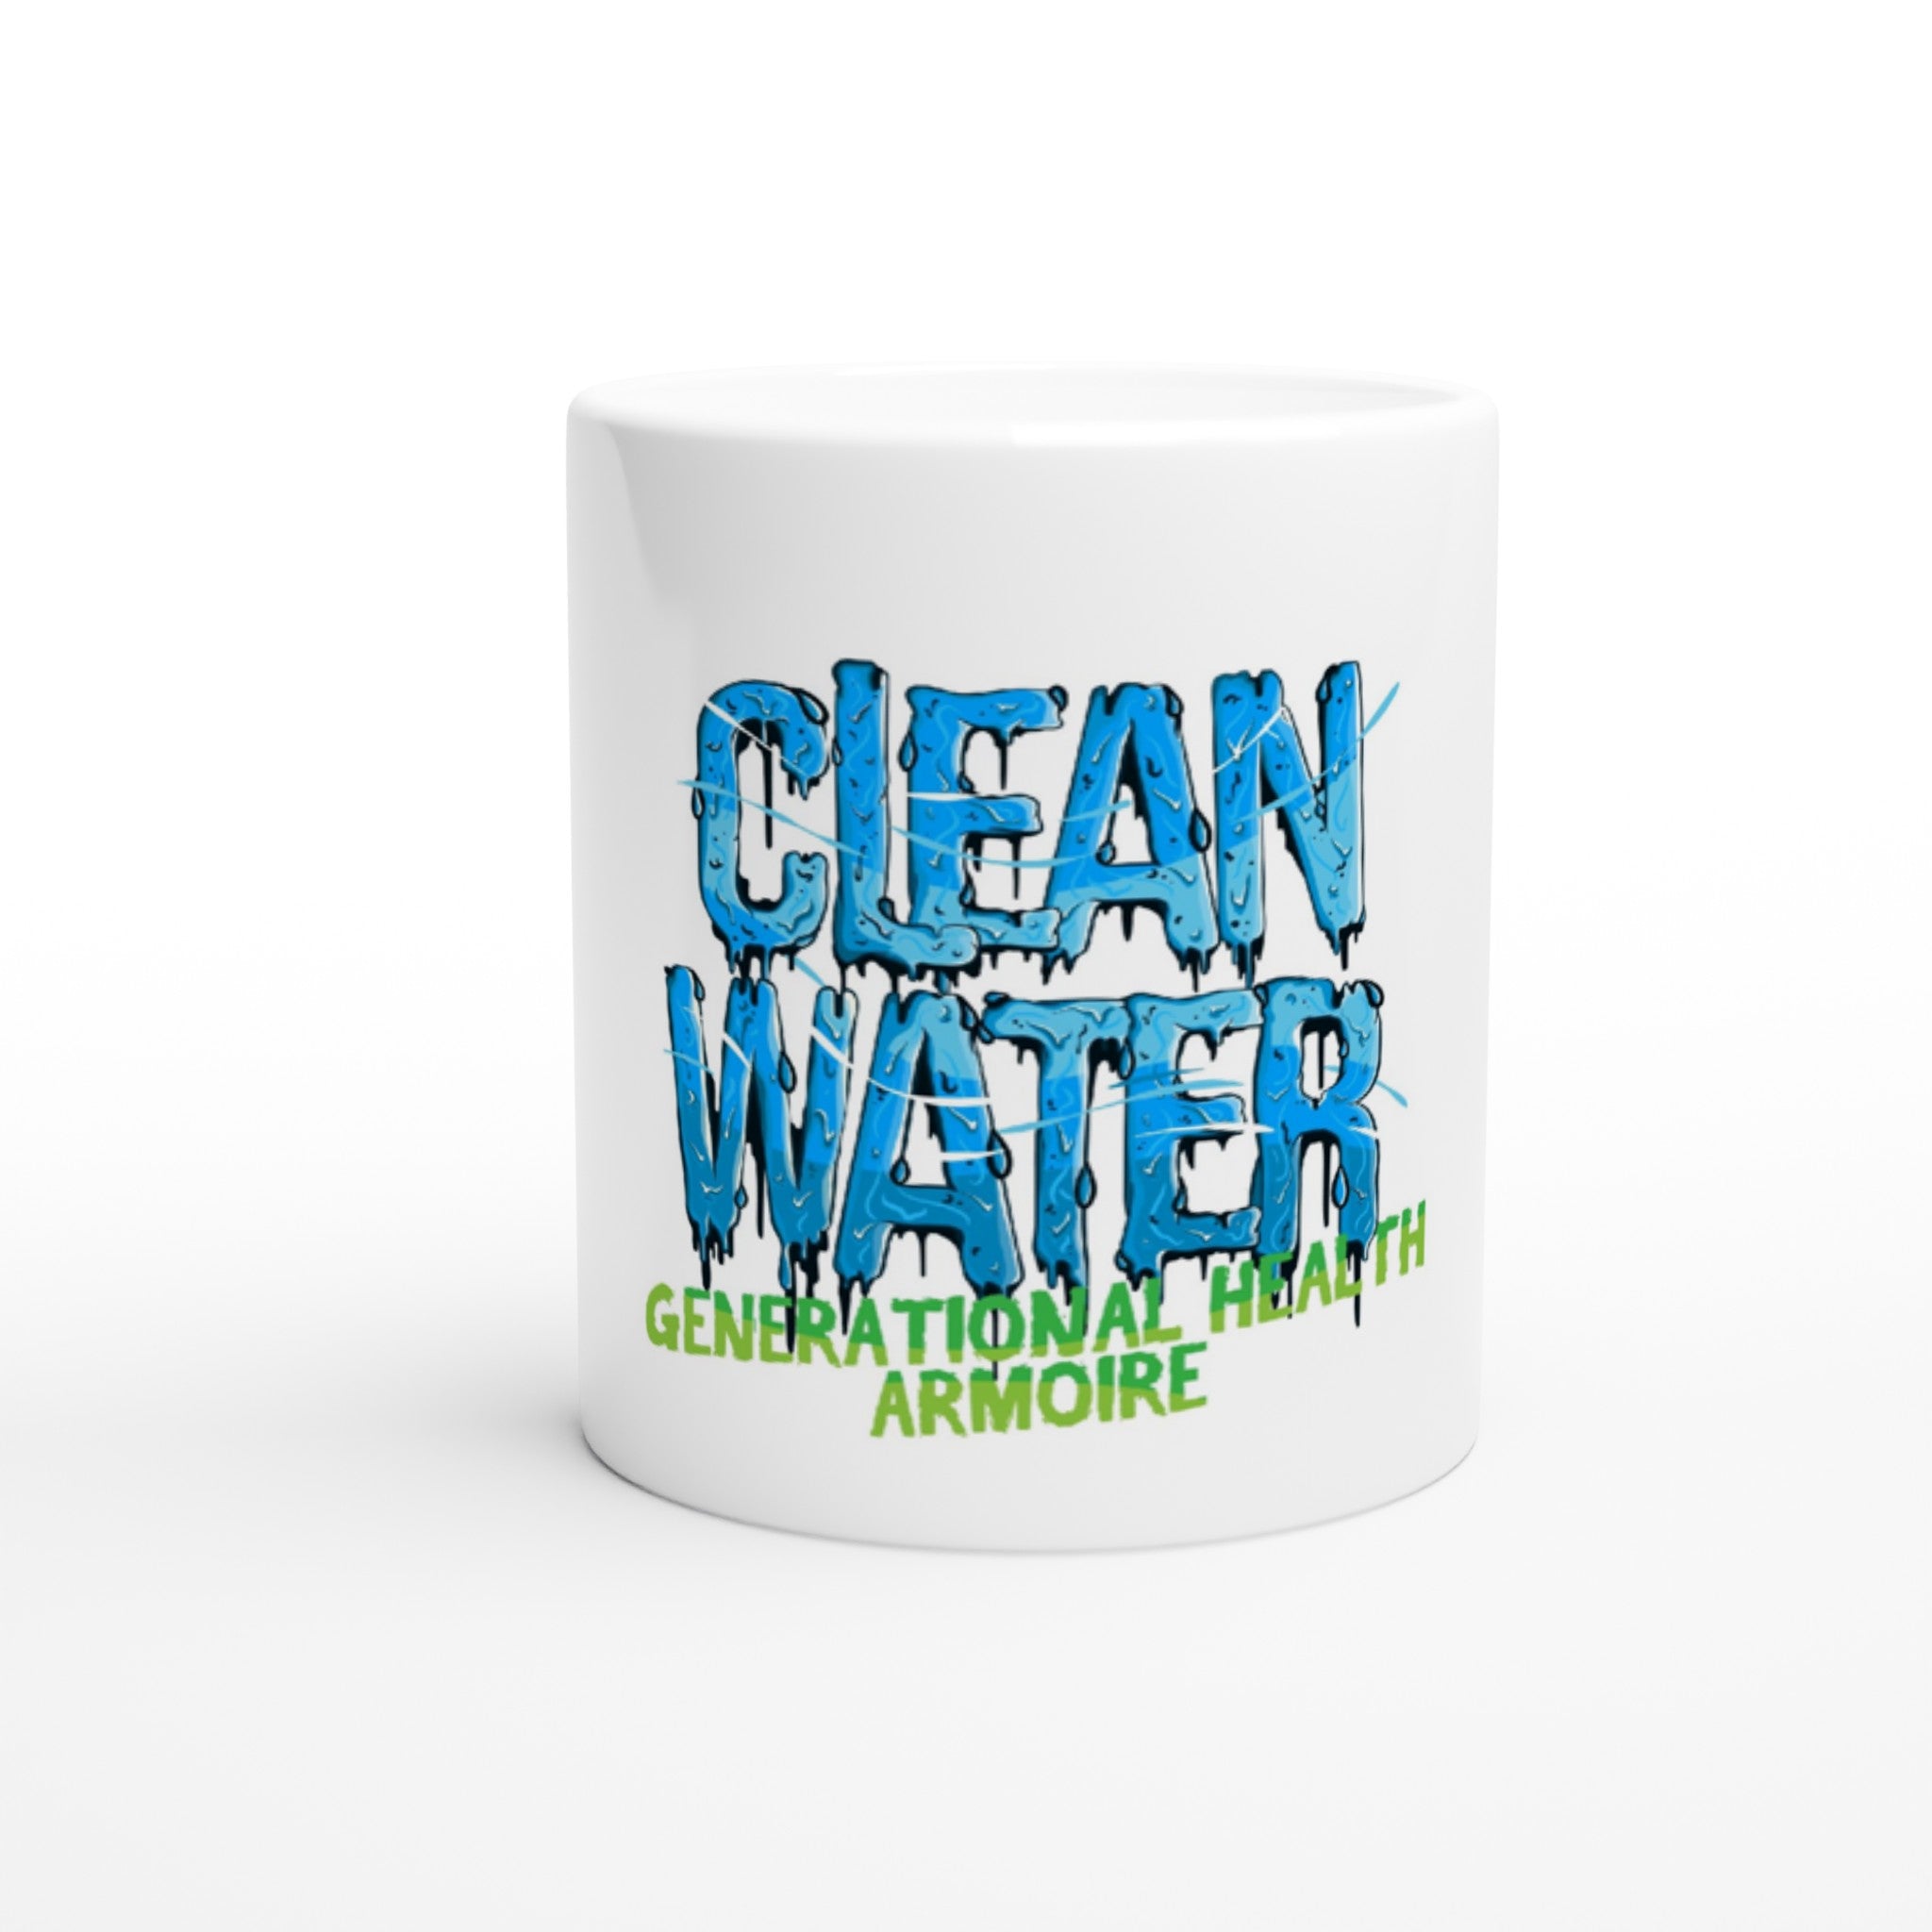 White 11oz Ceramic Mug - Clean Water